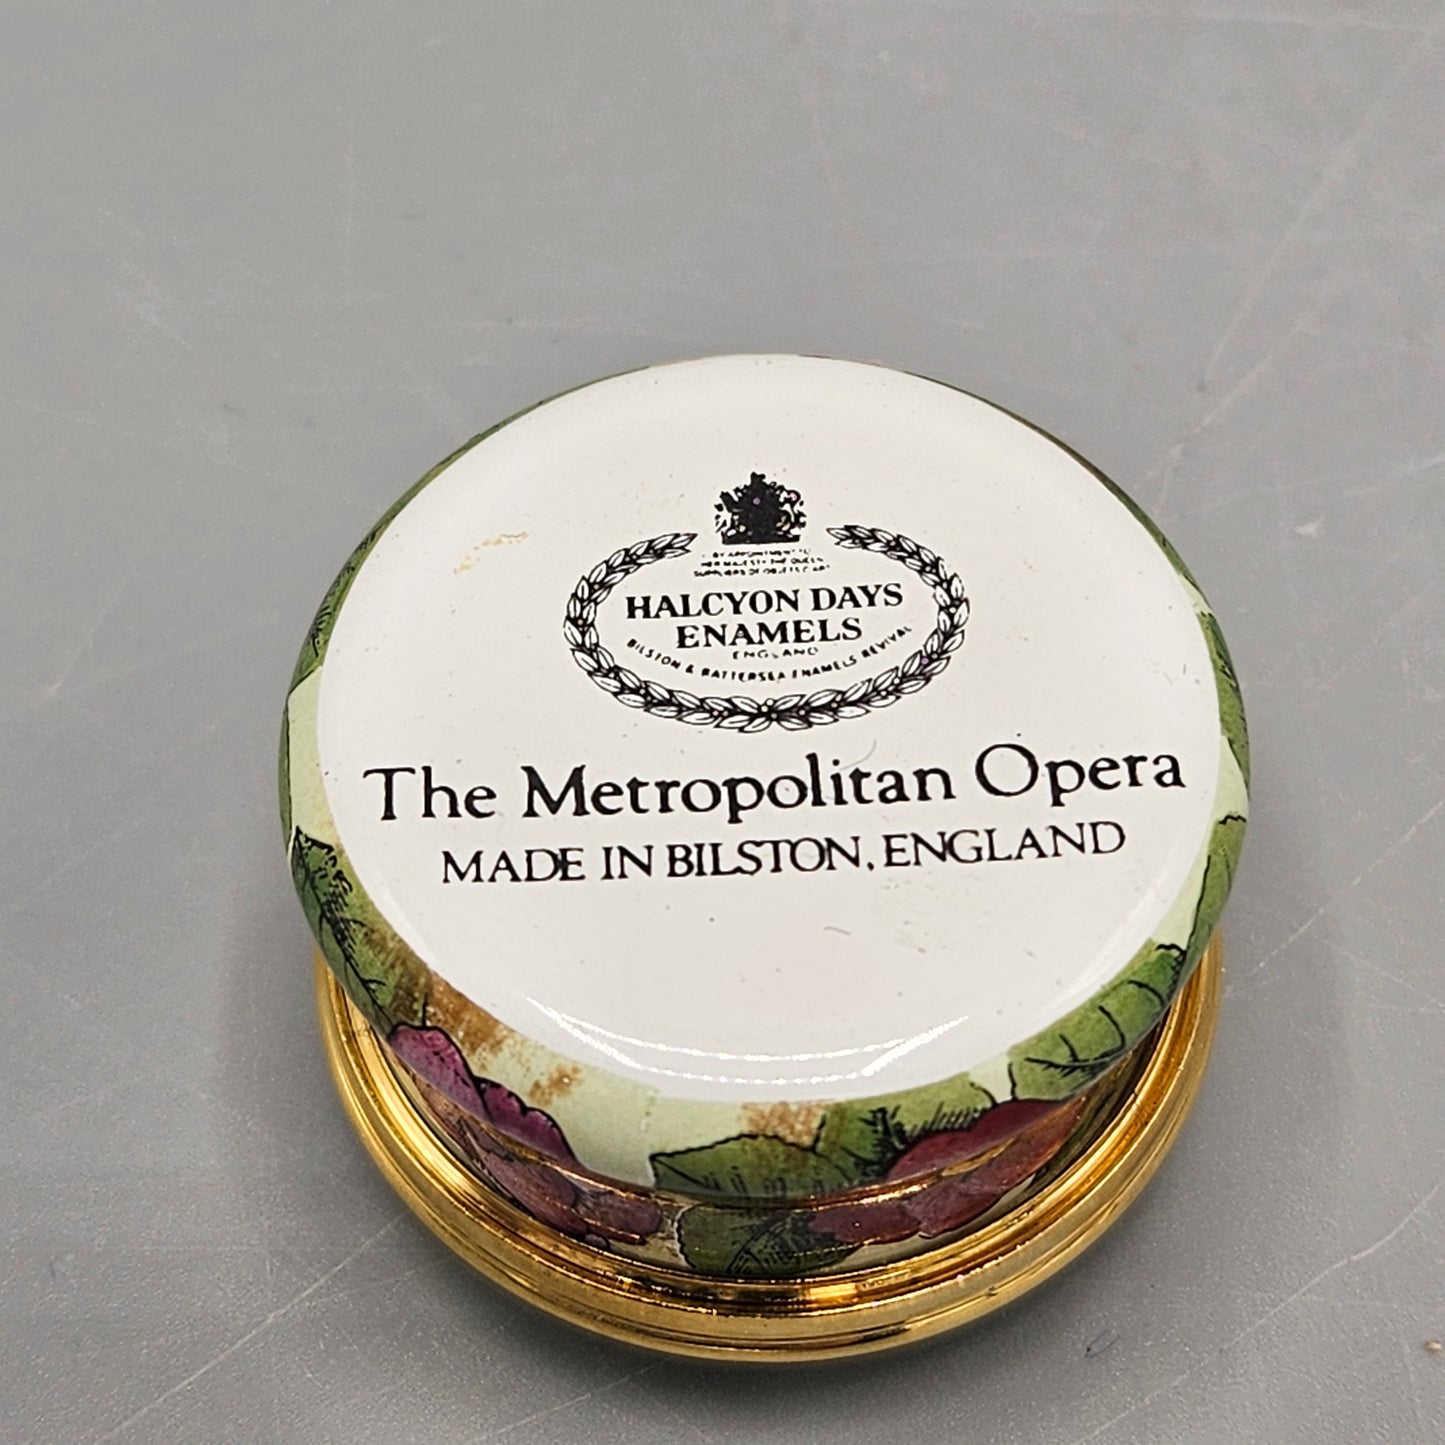 Halcyon Days England Enamel Metropolitan Opera "La Traviata" Box